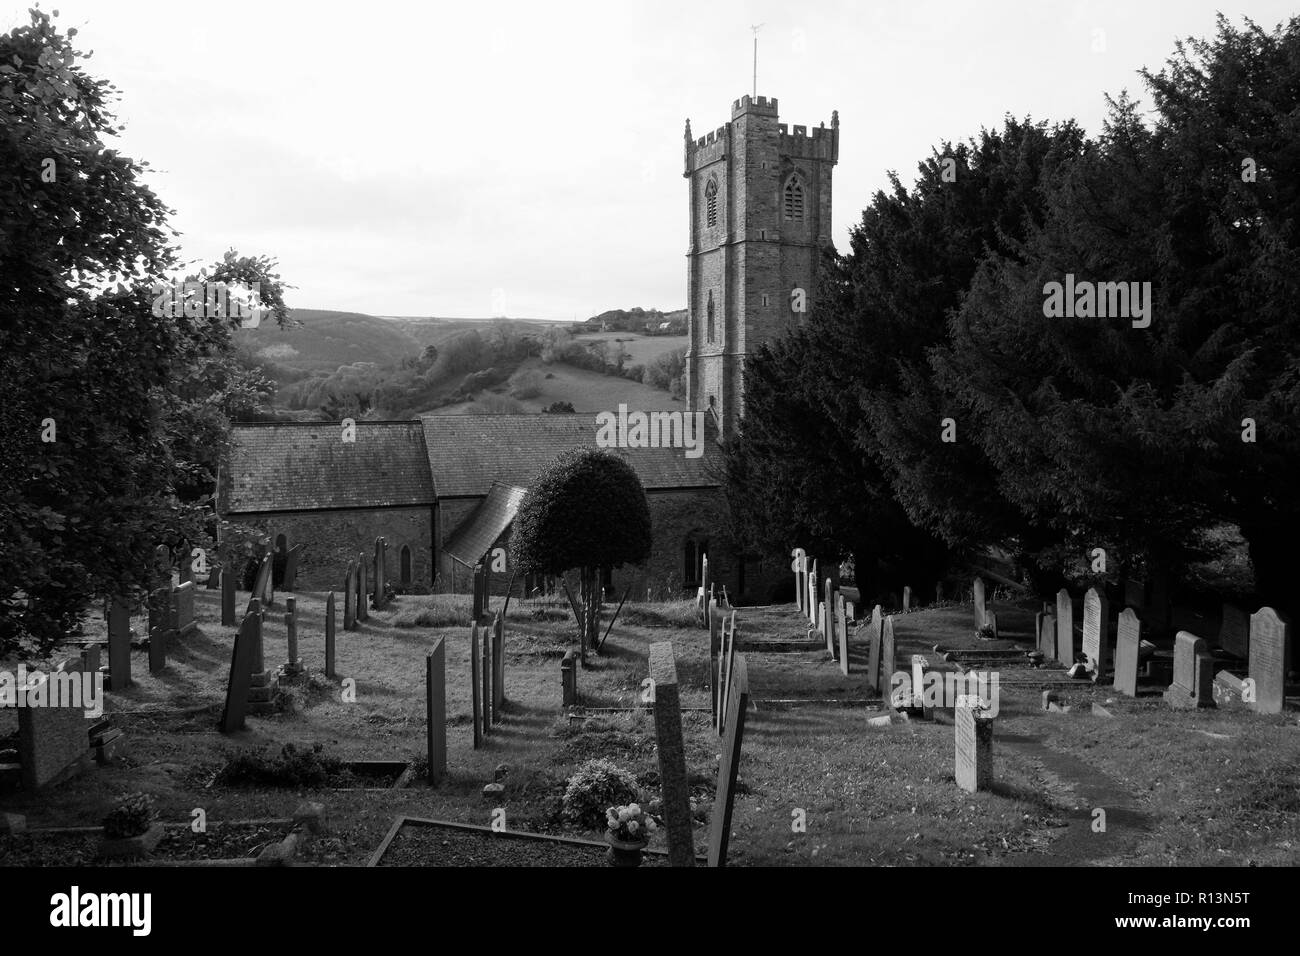 St. Peter's Kirche, Berrynarbor, in der Nähe von Ilfracombe, Devon, Anzeigen Friedhof im Vordergrund in Schwarz und Weiß, im Winter, in der Gemeinde von Exeter. Stockfoto